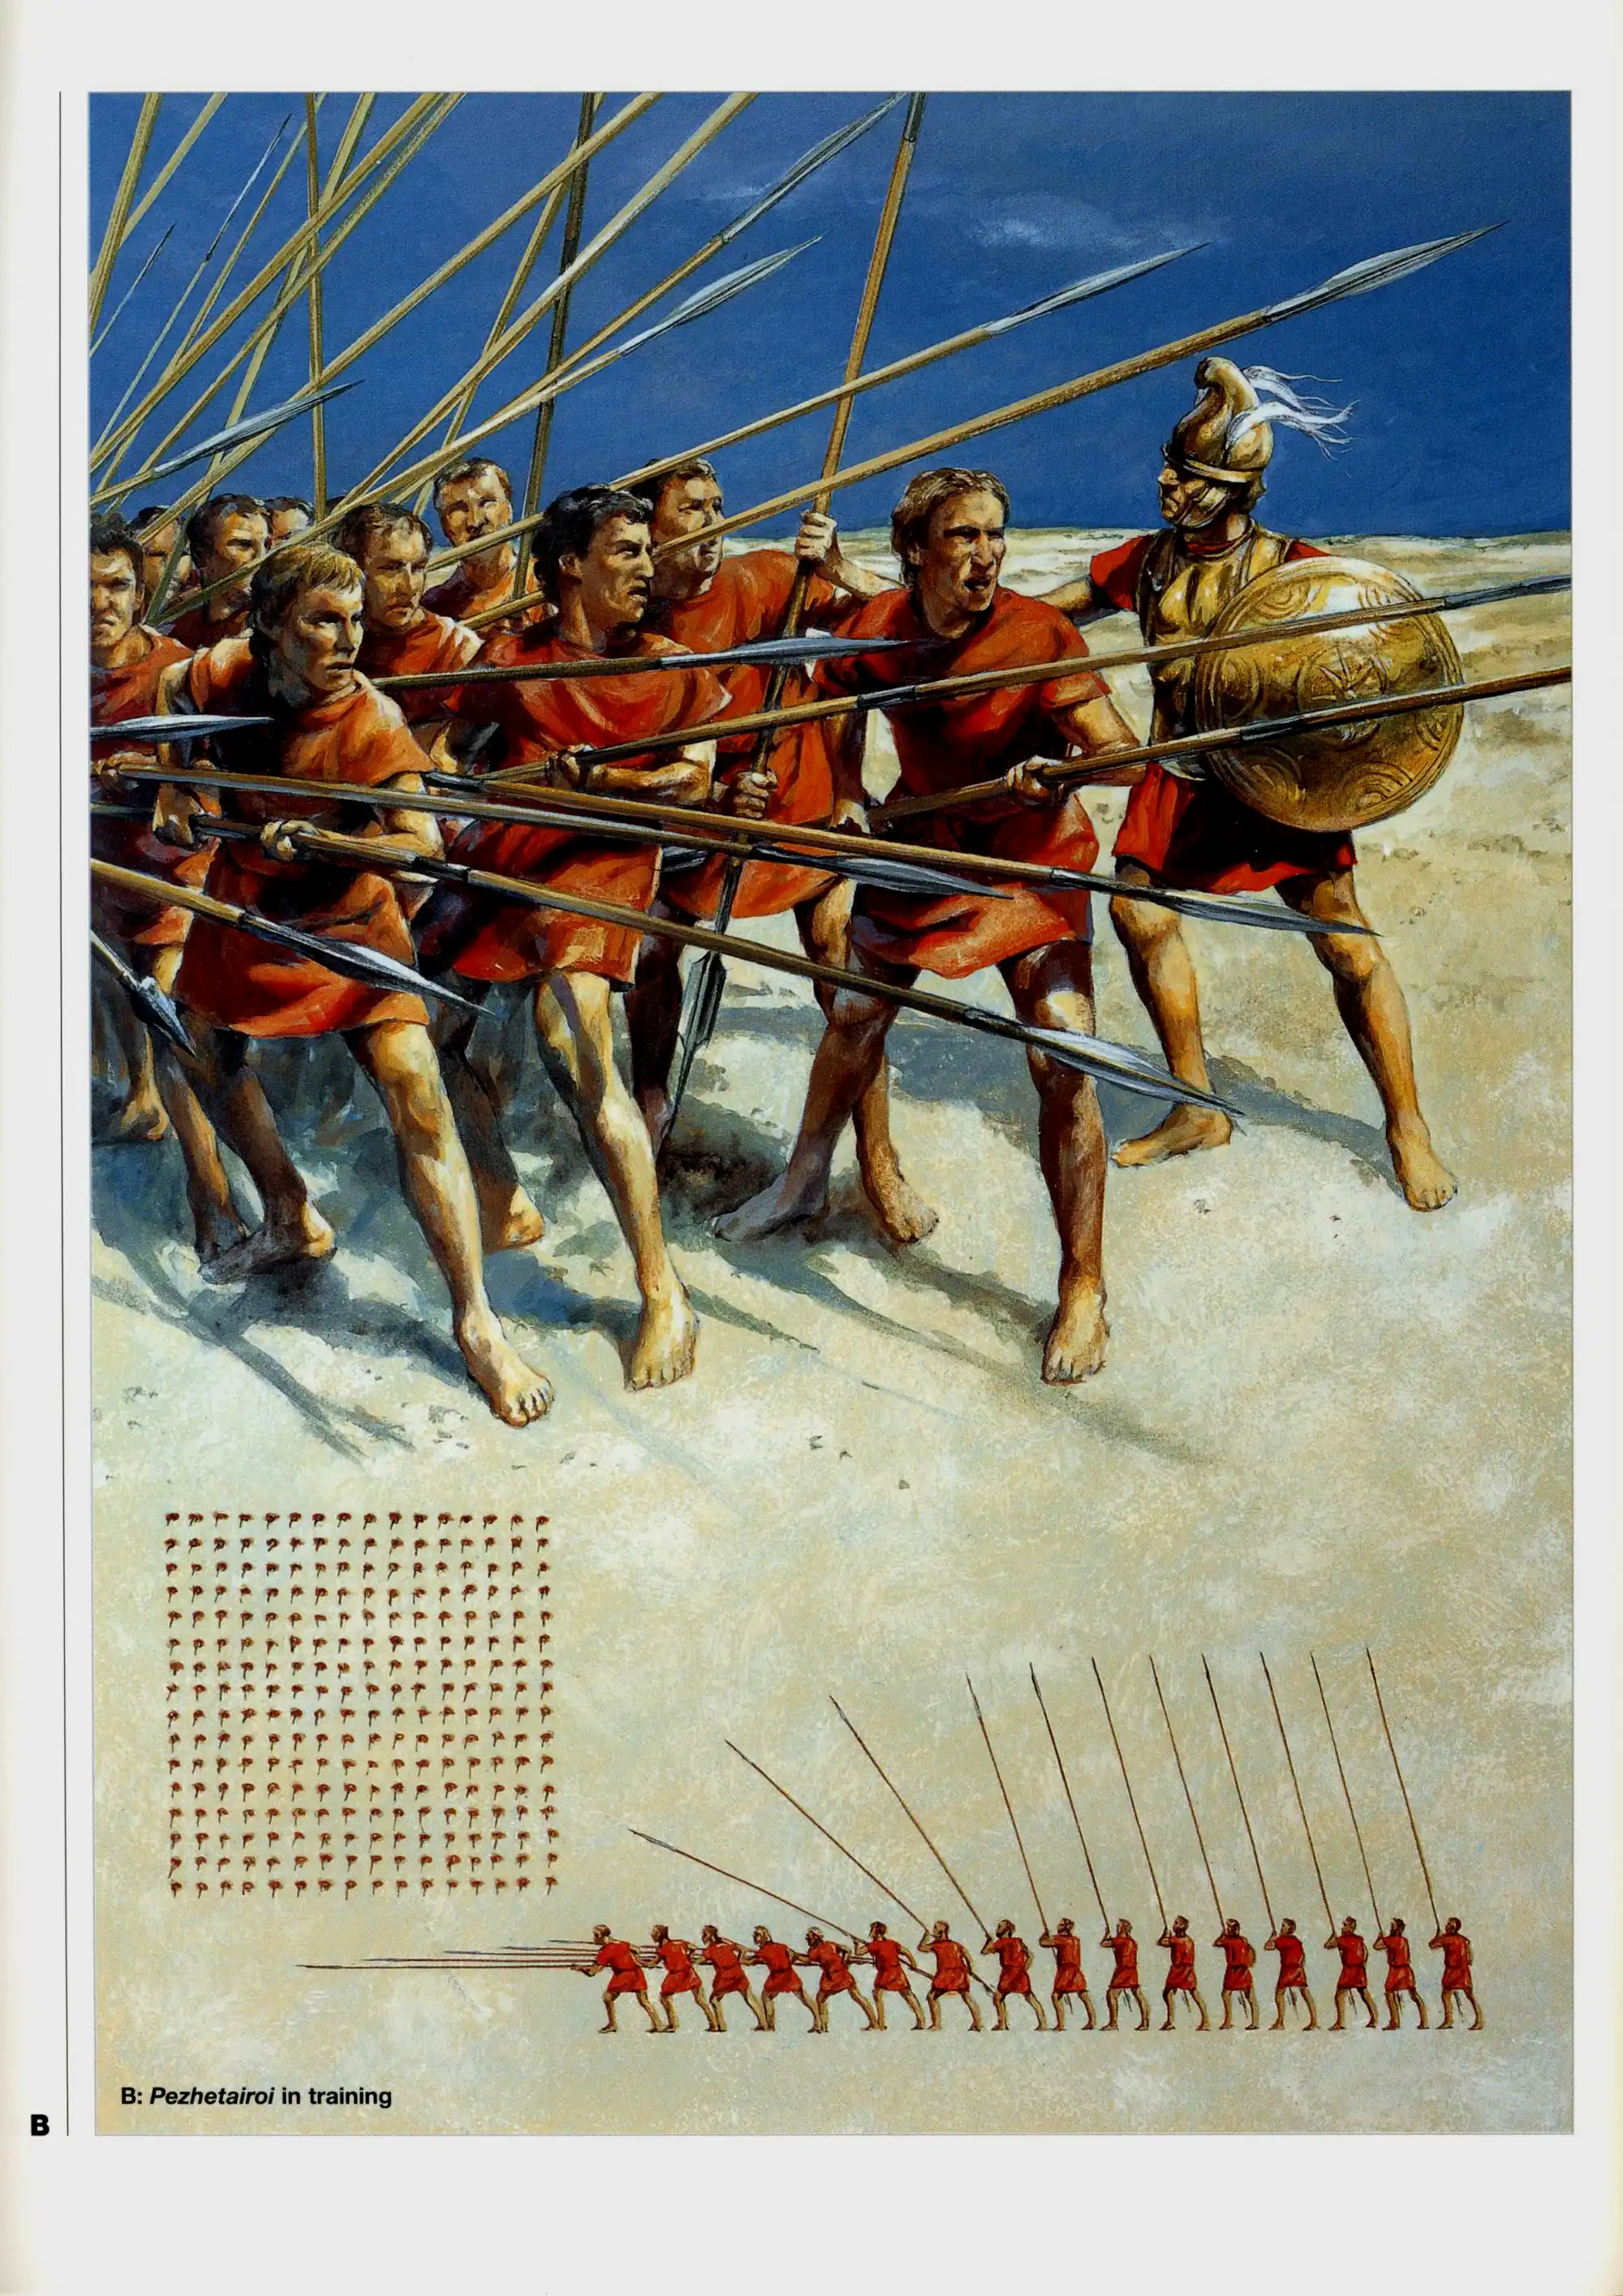 腓力二世的马其顿方阵发挥了重要作用。如图中所示，到了亚历山大时代，方阵前五排放平长枪，后五排把长枪斜向上举起，最后六排竖起长枪